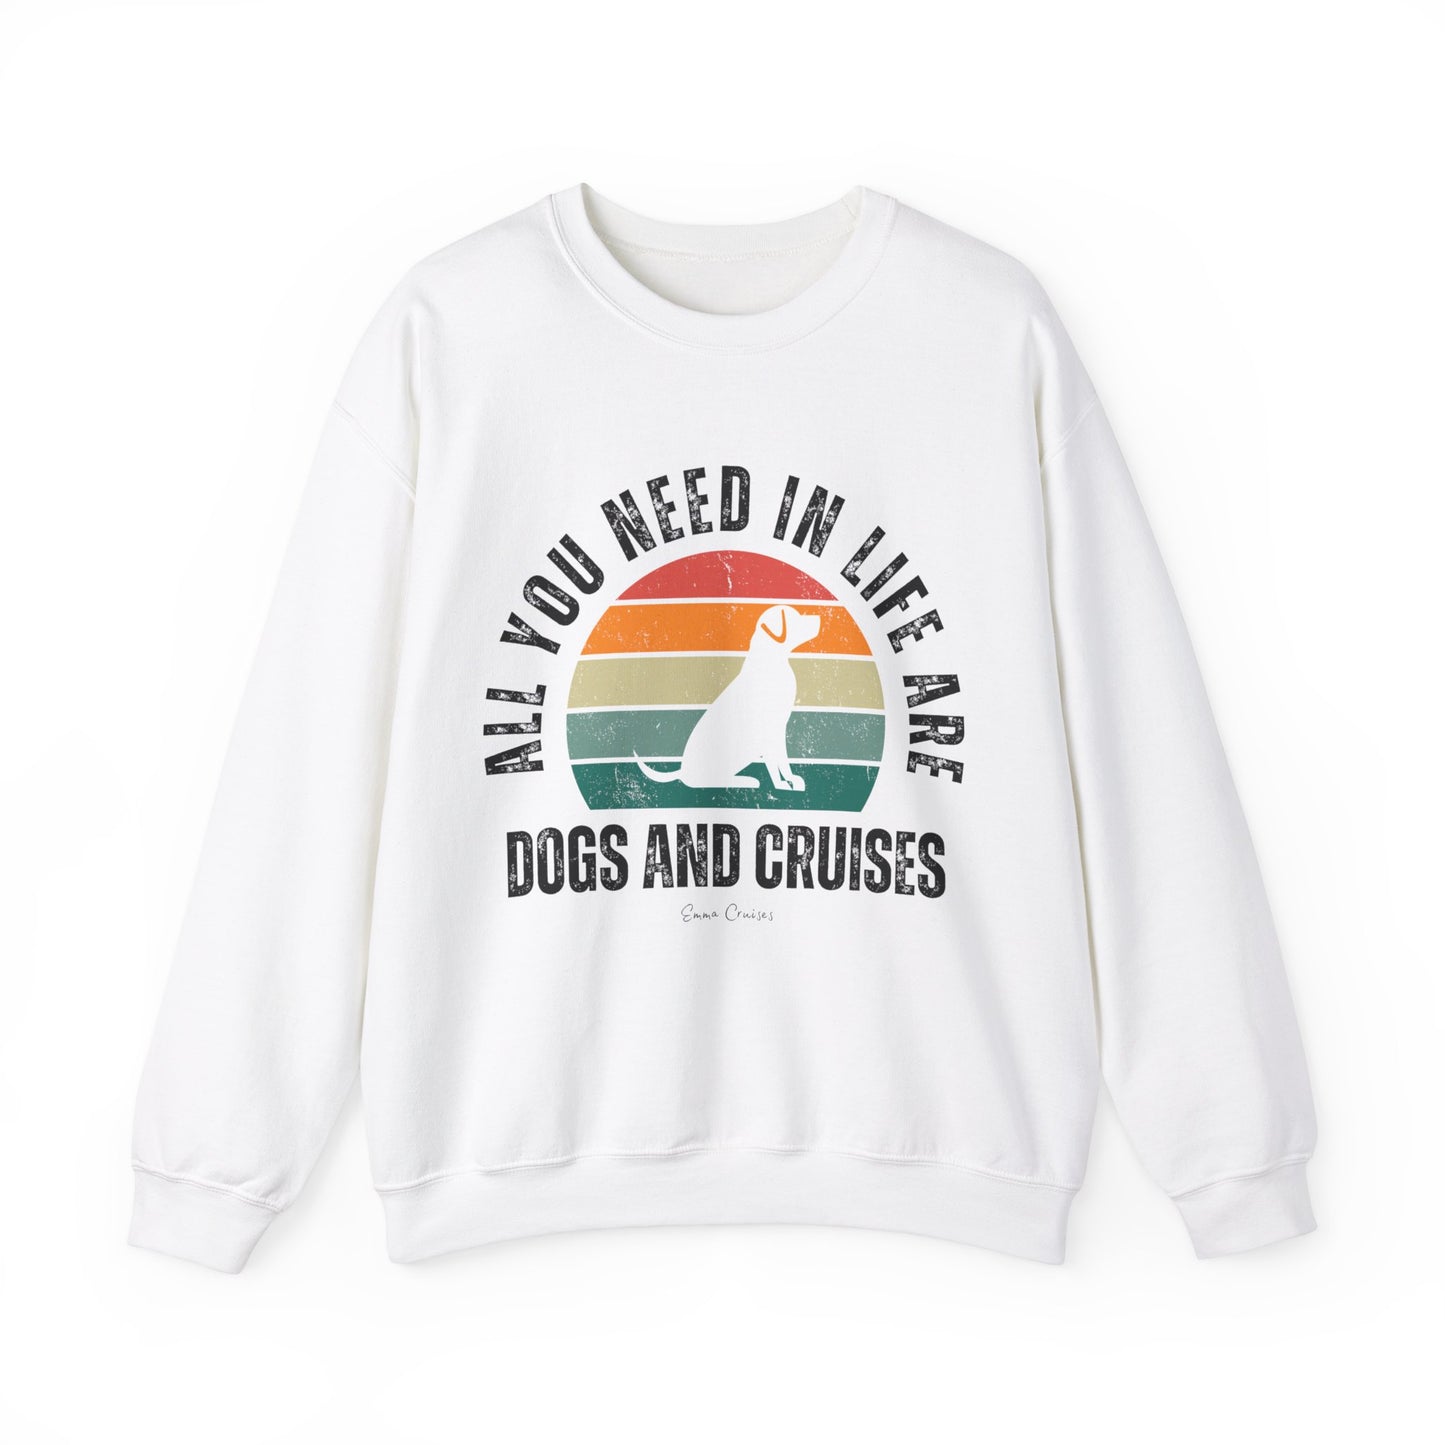 Dogs and Cruises - UNISEX Crewneck Sweatshirt